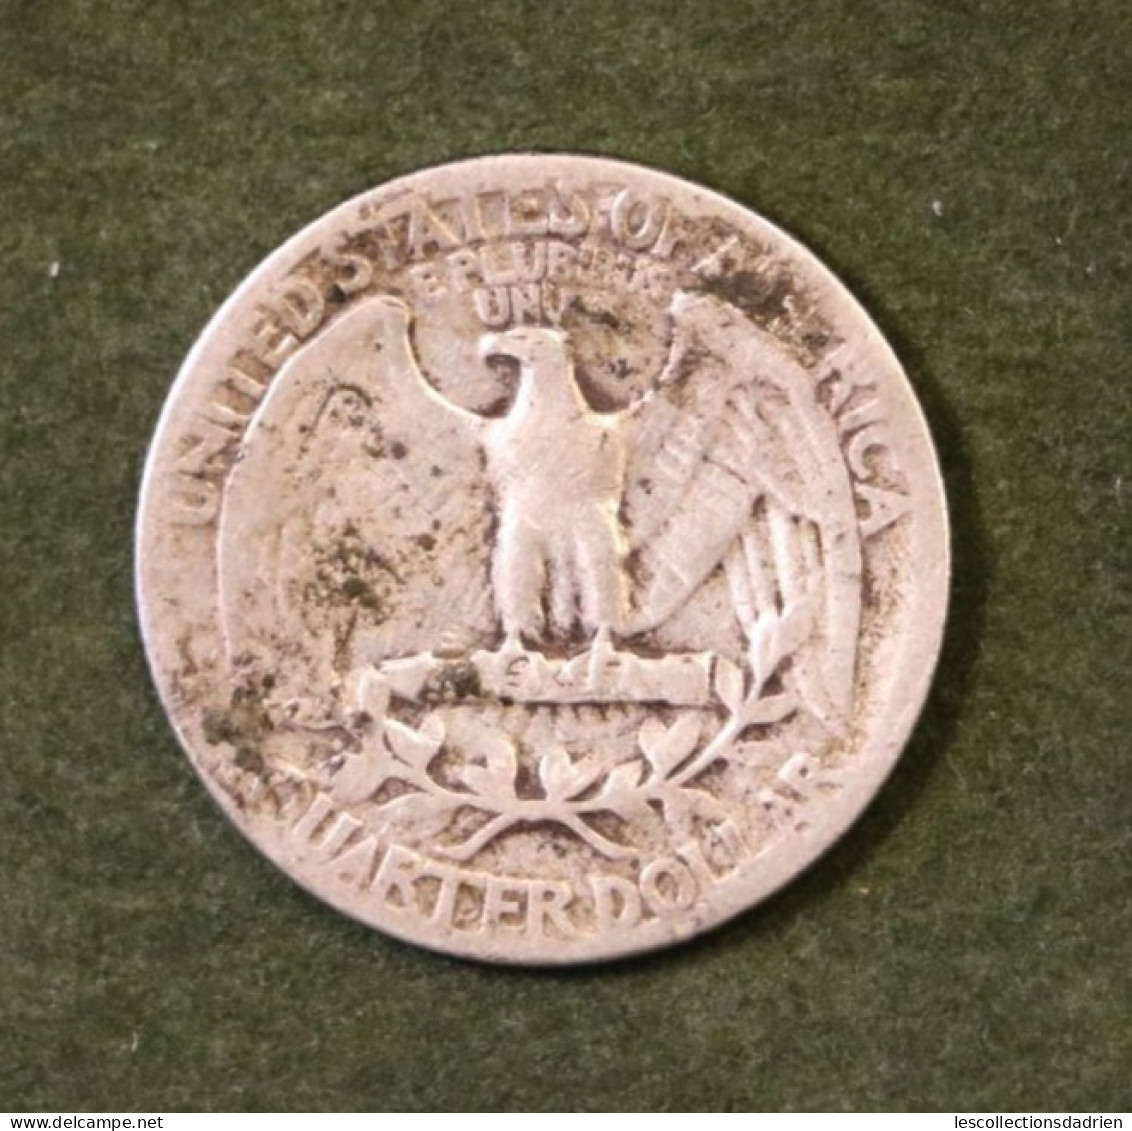 Pièce En Argent Etats-Unis 25 Cents 1944  - US Silver Coin Quarter - 1932-1998: Washington